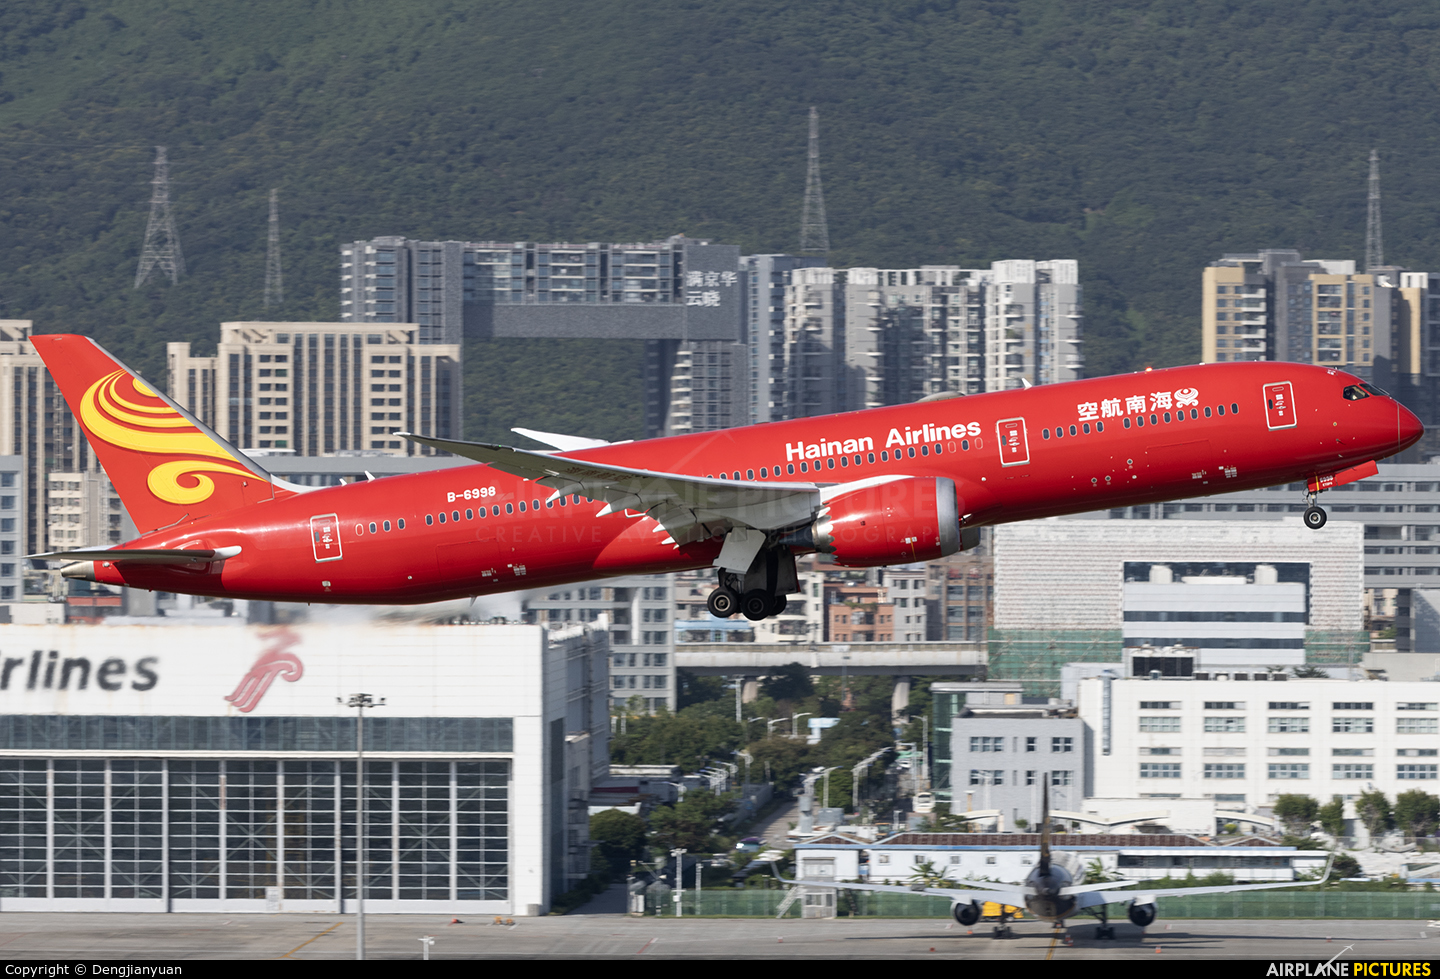 Hainan Airlines B-6998 aircraft at Shenzhen Bao\